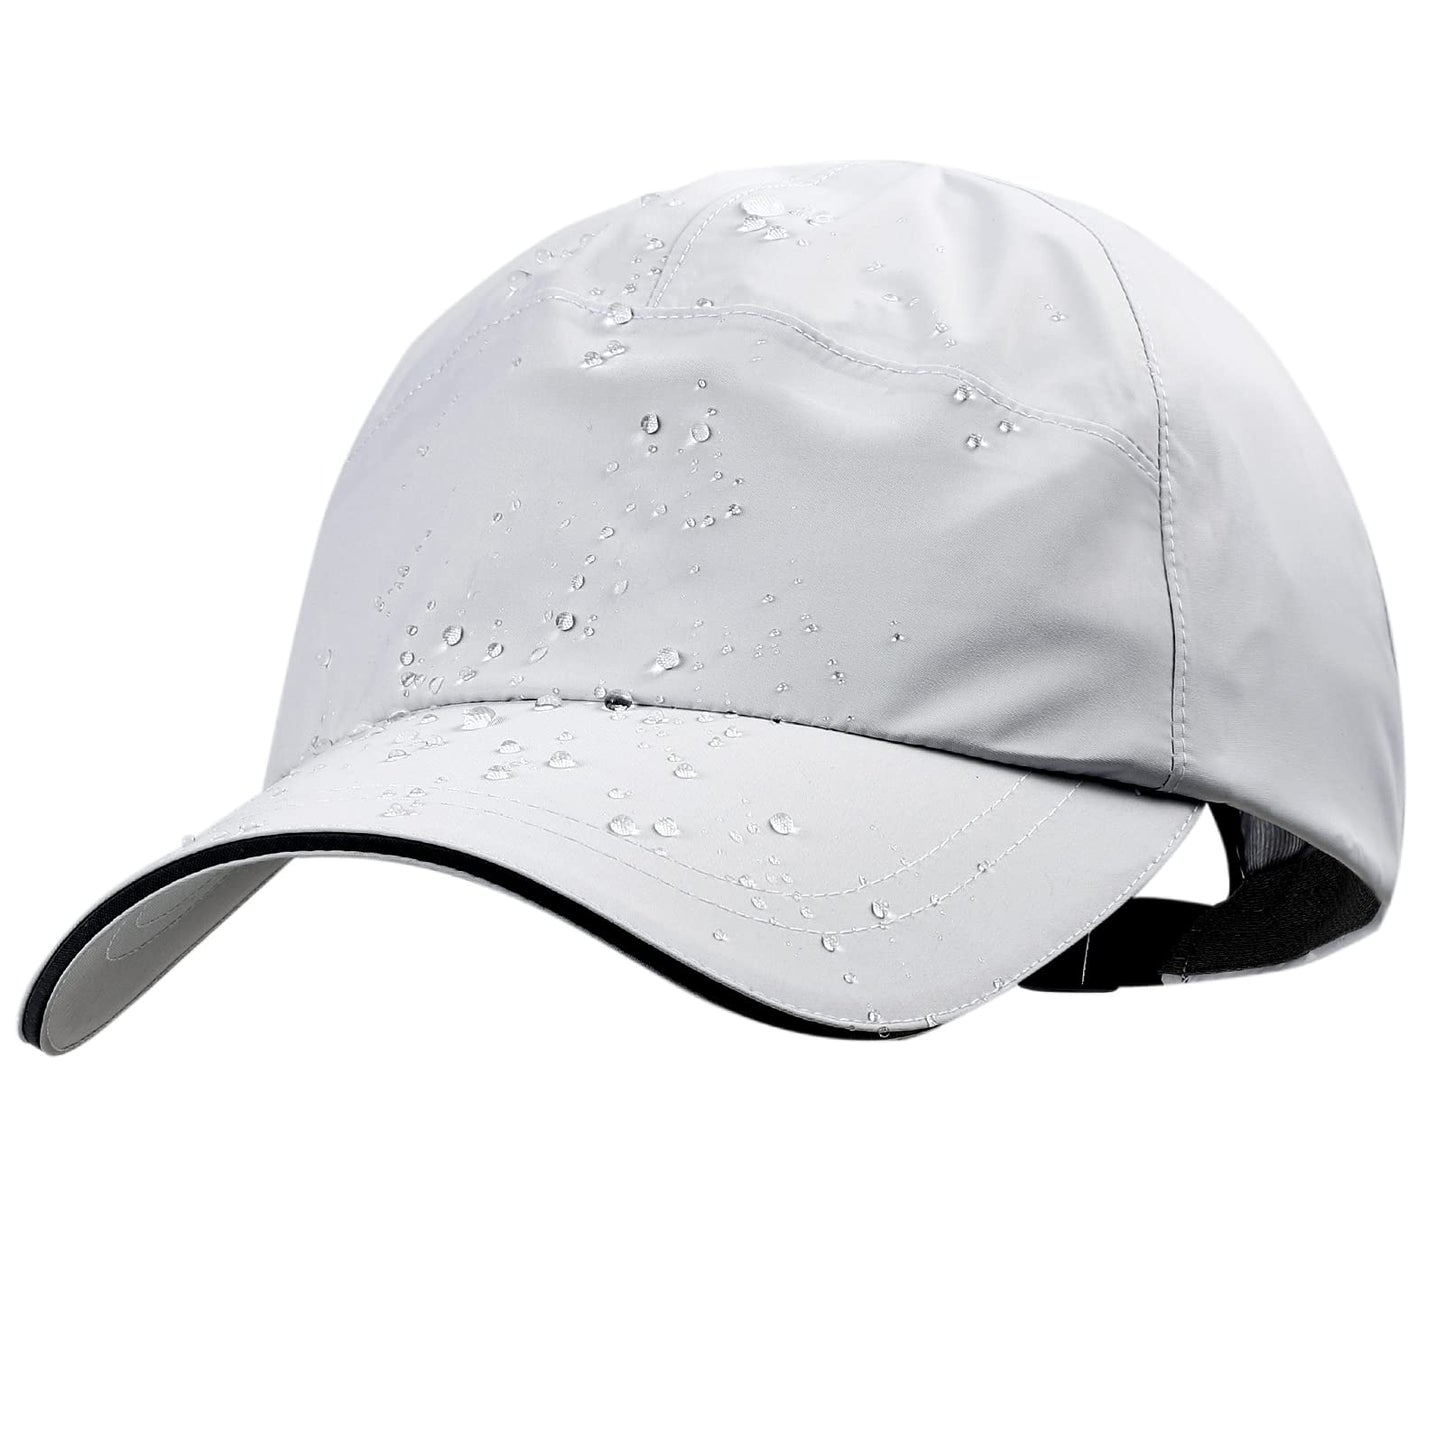 Waterproof Baseball  Outdoor Cap with Reflective Belt